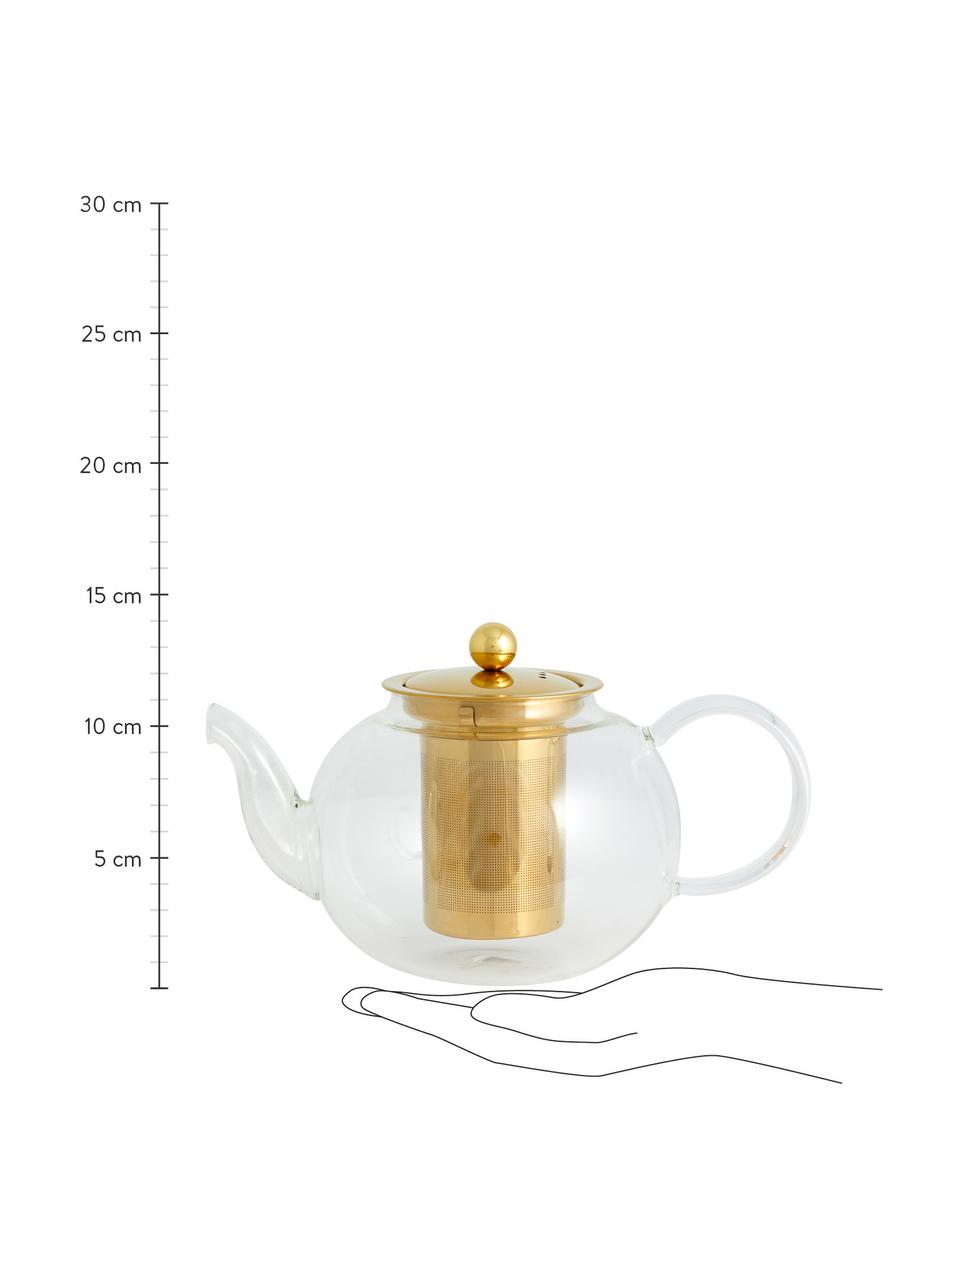 Teekanne Chili aus Glas mit goldfarbenem Teesieb, 1 L, Kanne: Glas, Transparent, Goldfarben, 1 L